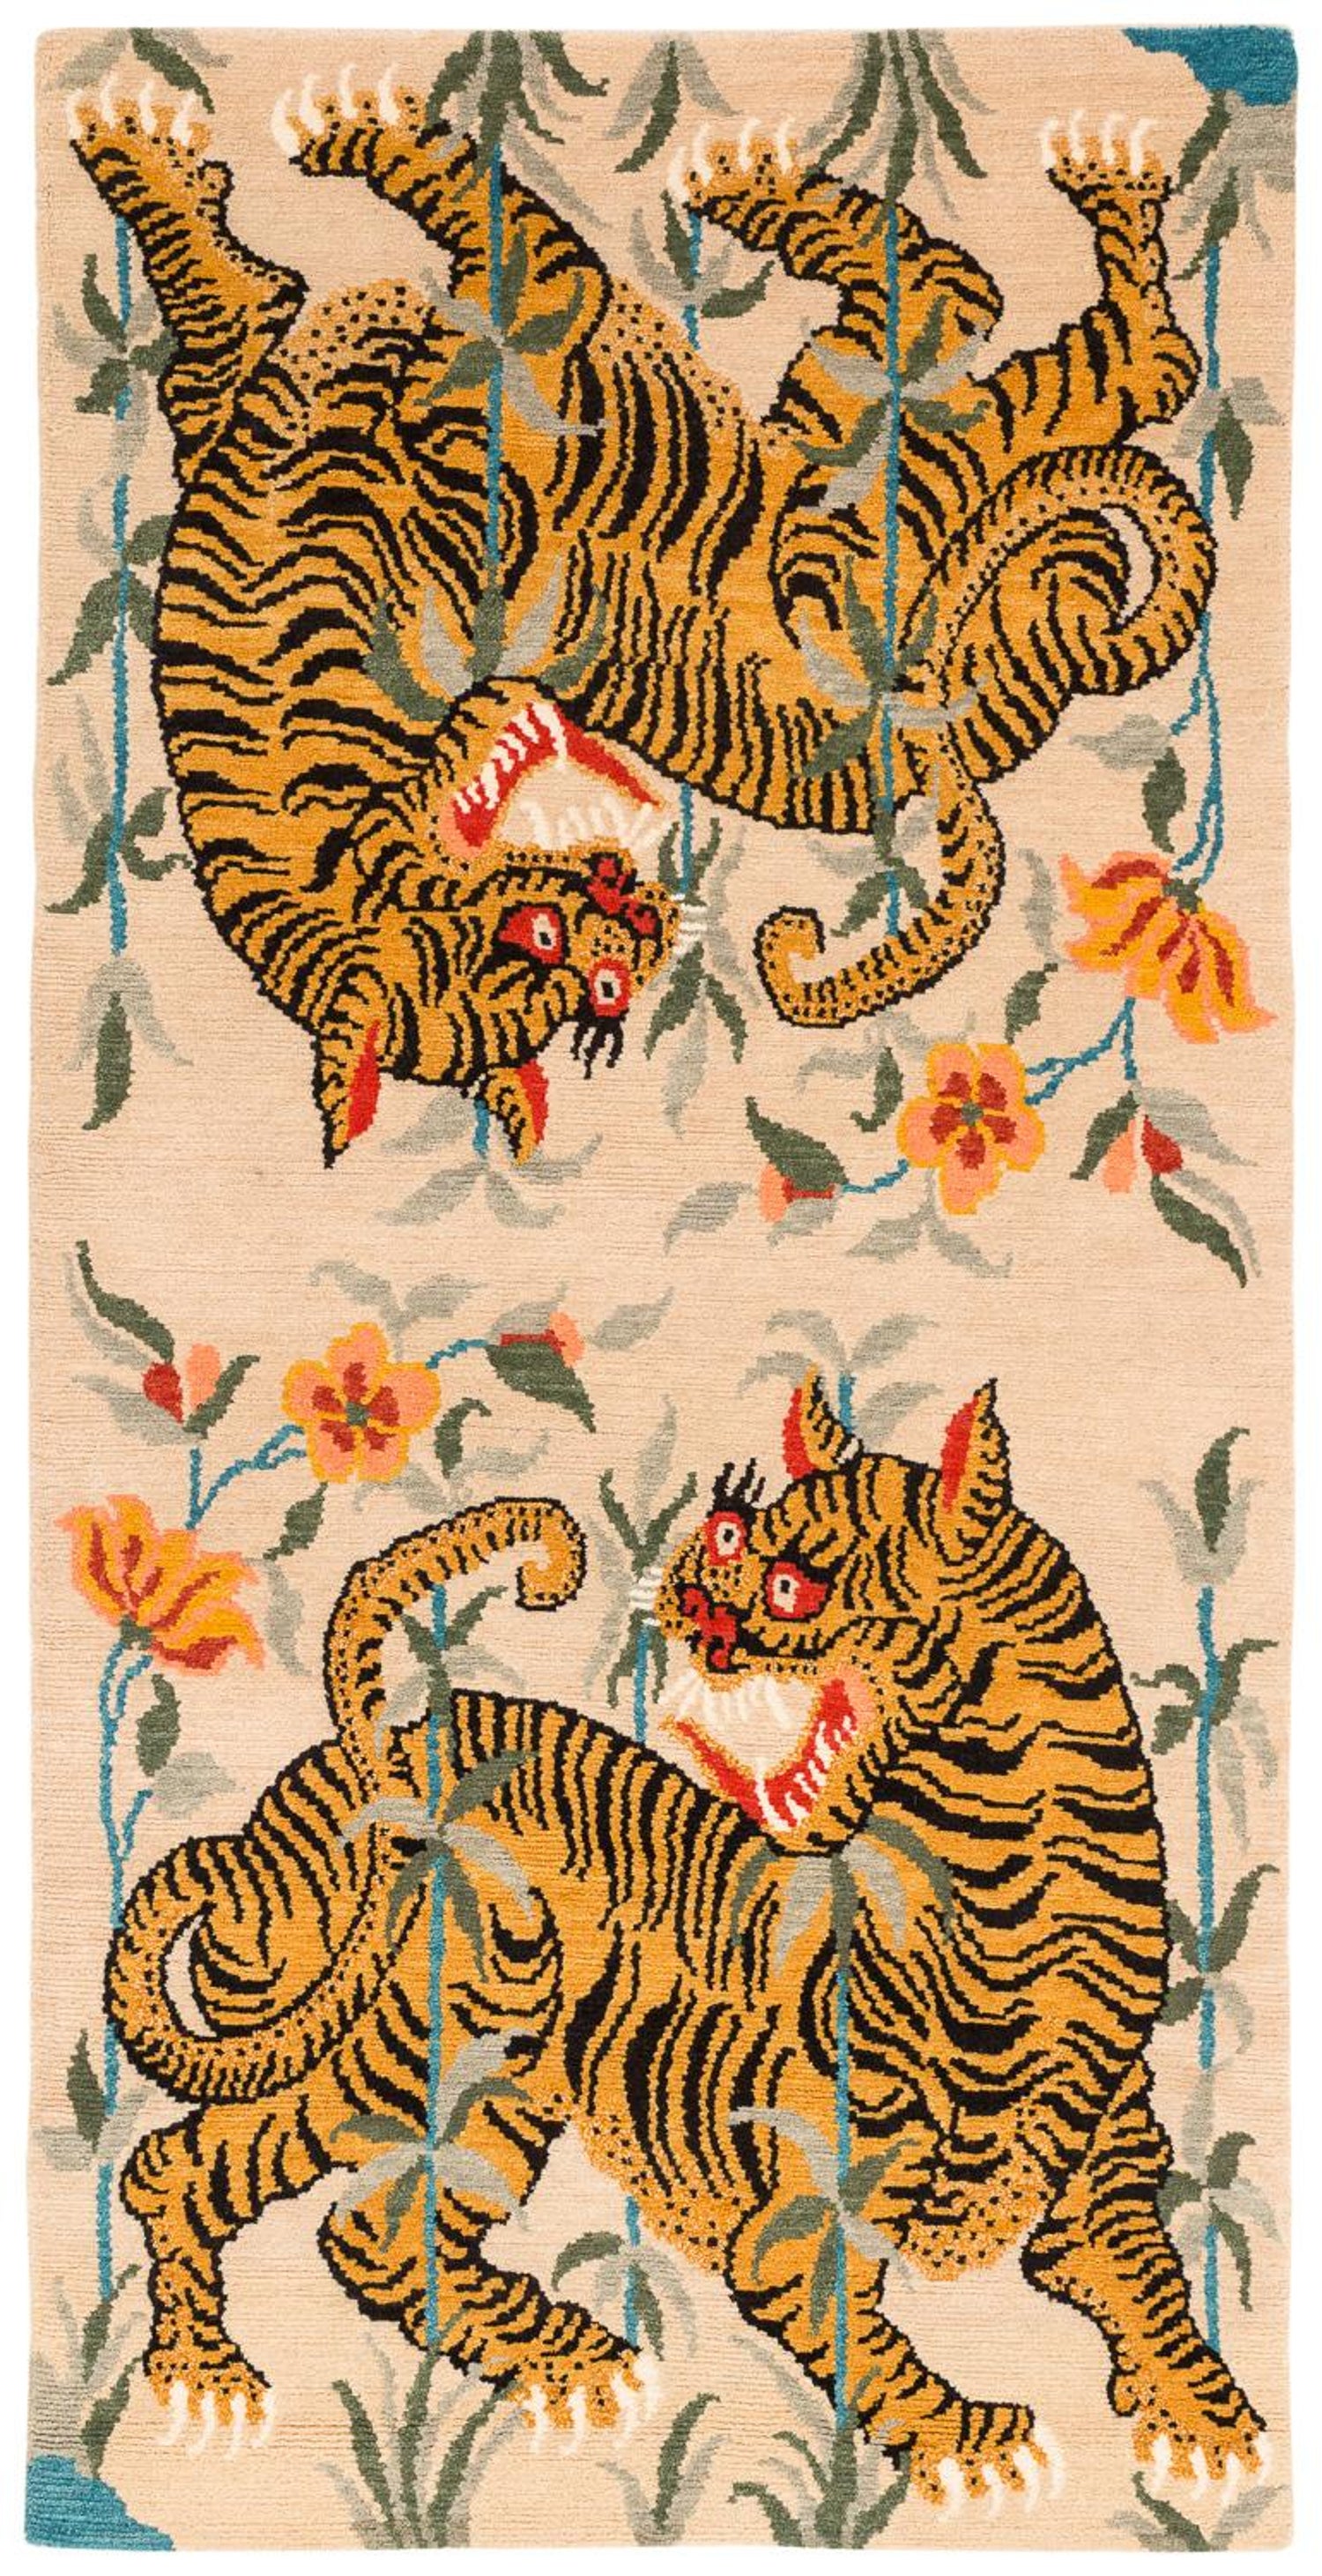 Gucci Tiger Print Wallpaper | Matane Wall